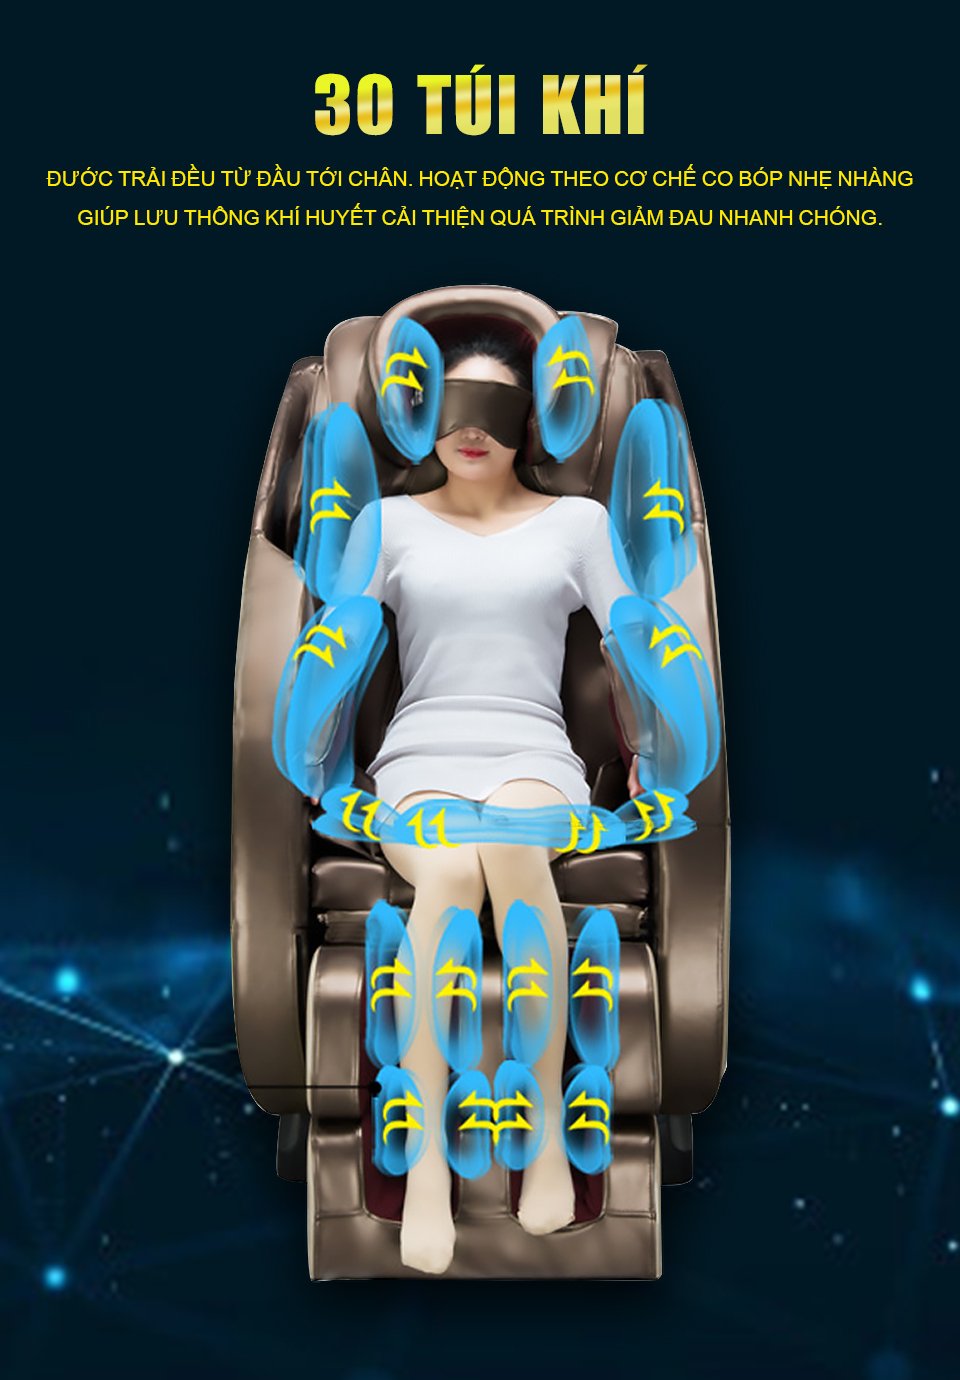 Hệ thống 30 túi khí hiện đại đáng mong đợi của ghế massage Haruko H7 